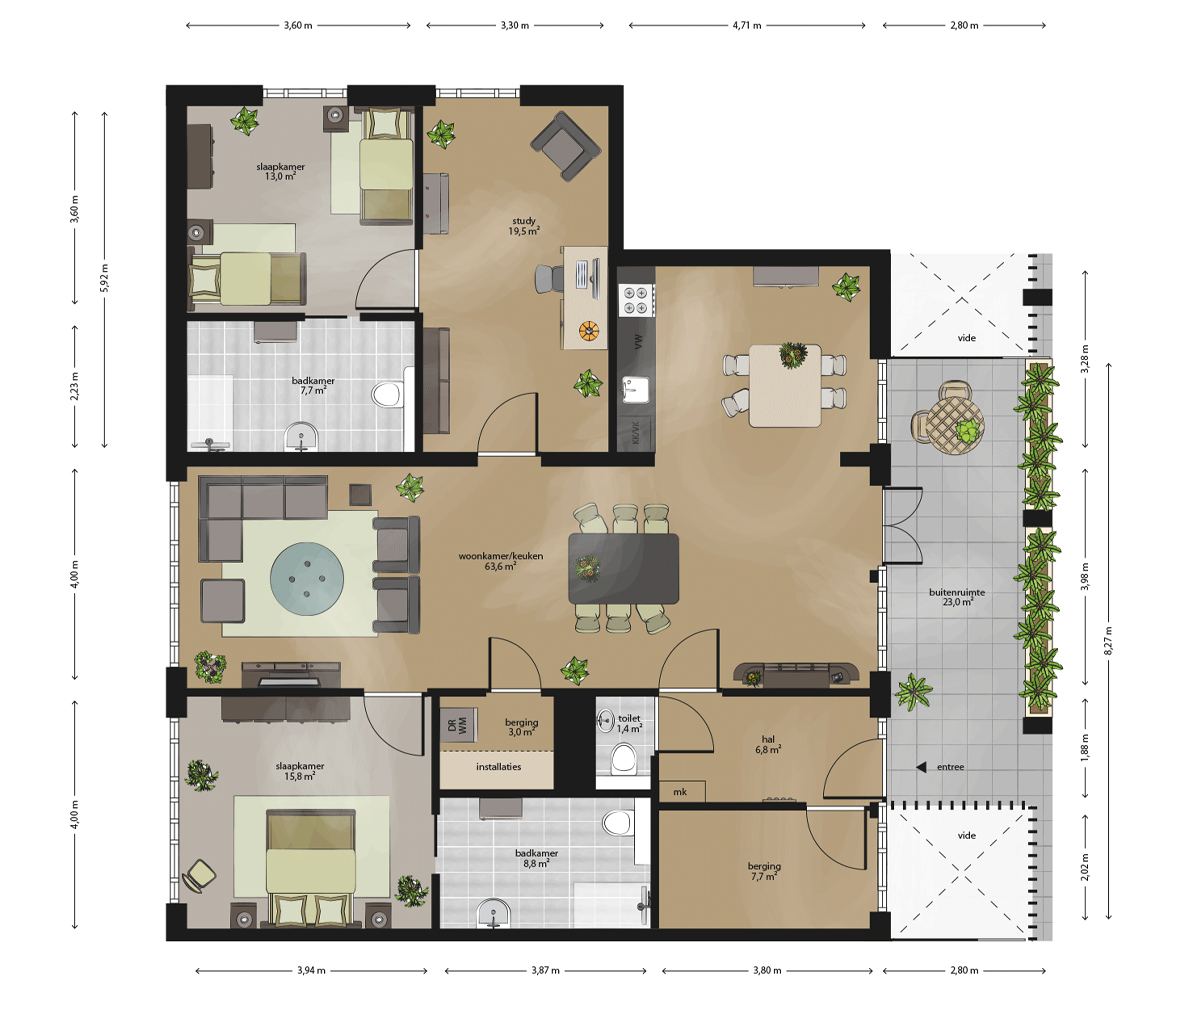 residentie-moller-5-27-plattegrond